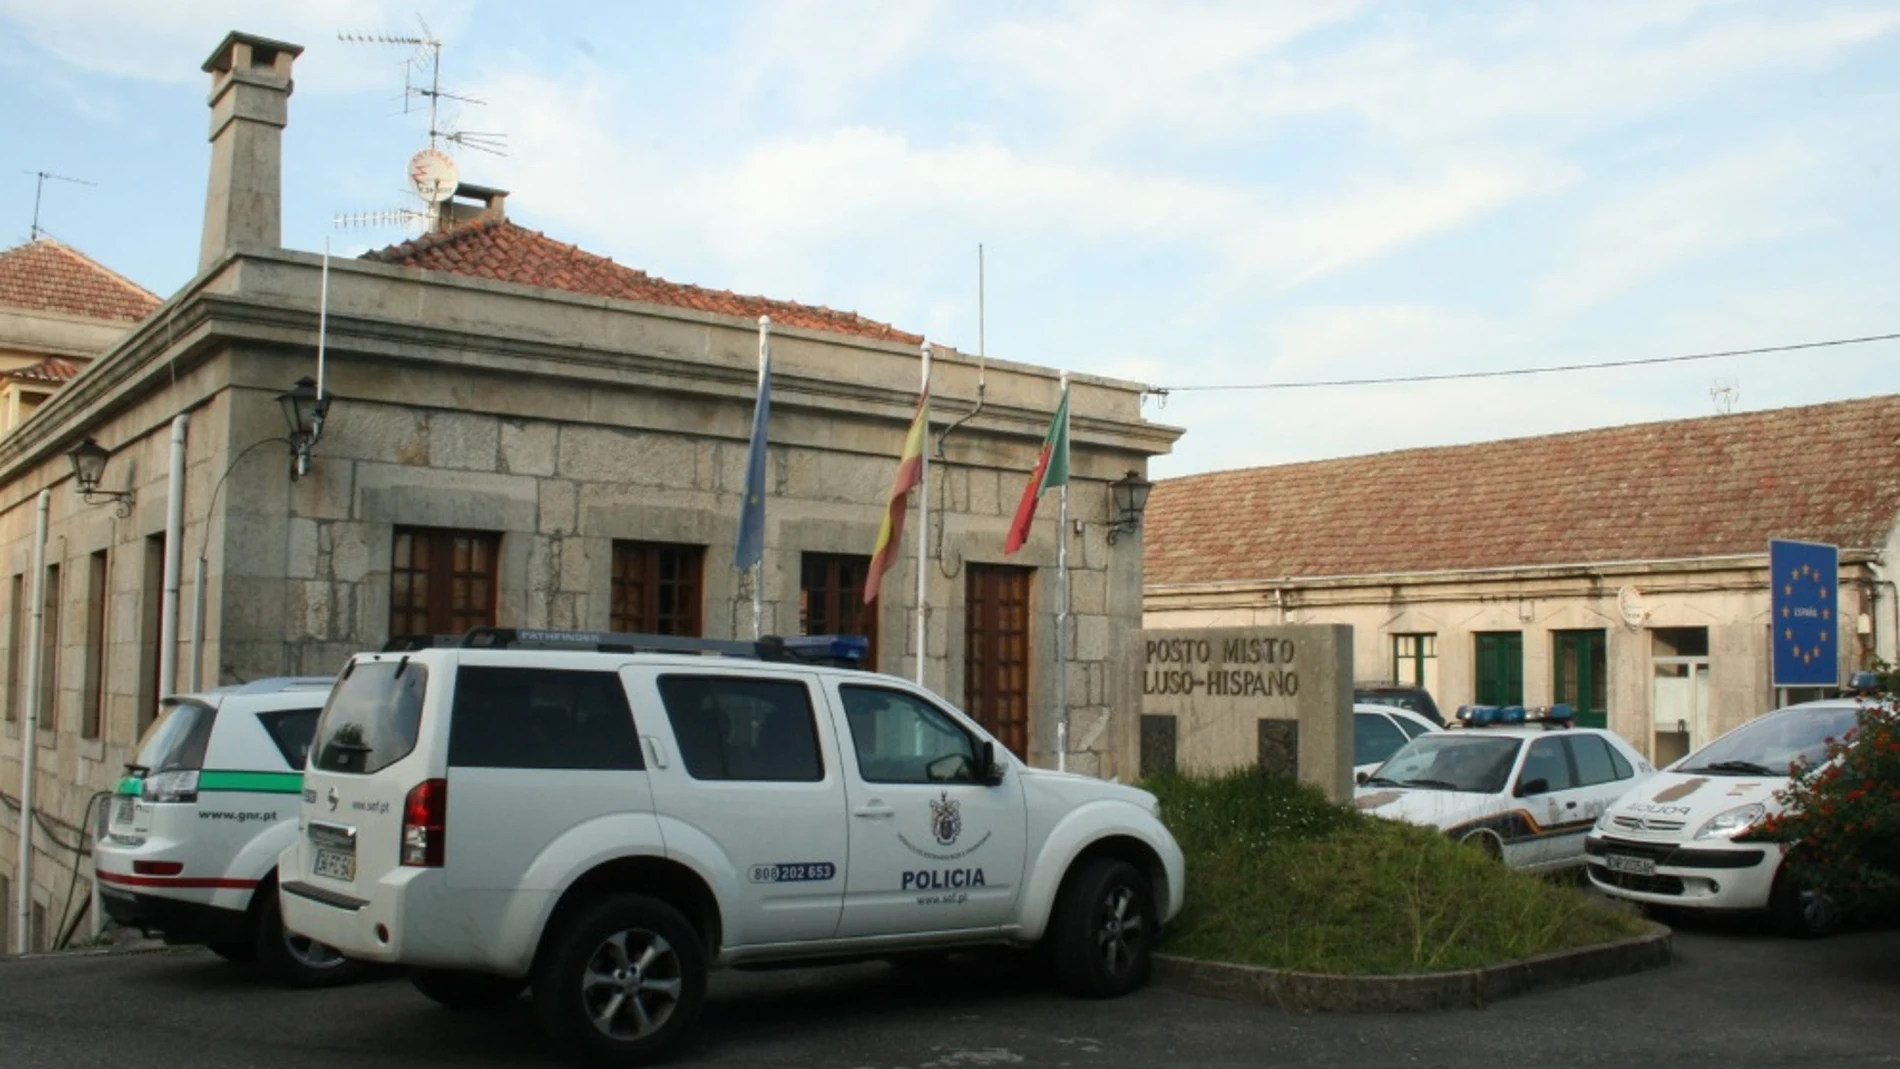 Coche de la Policía en Portugal